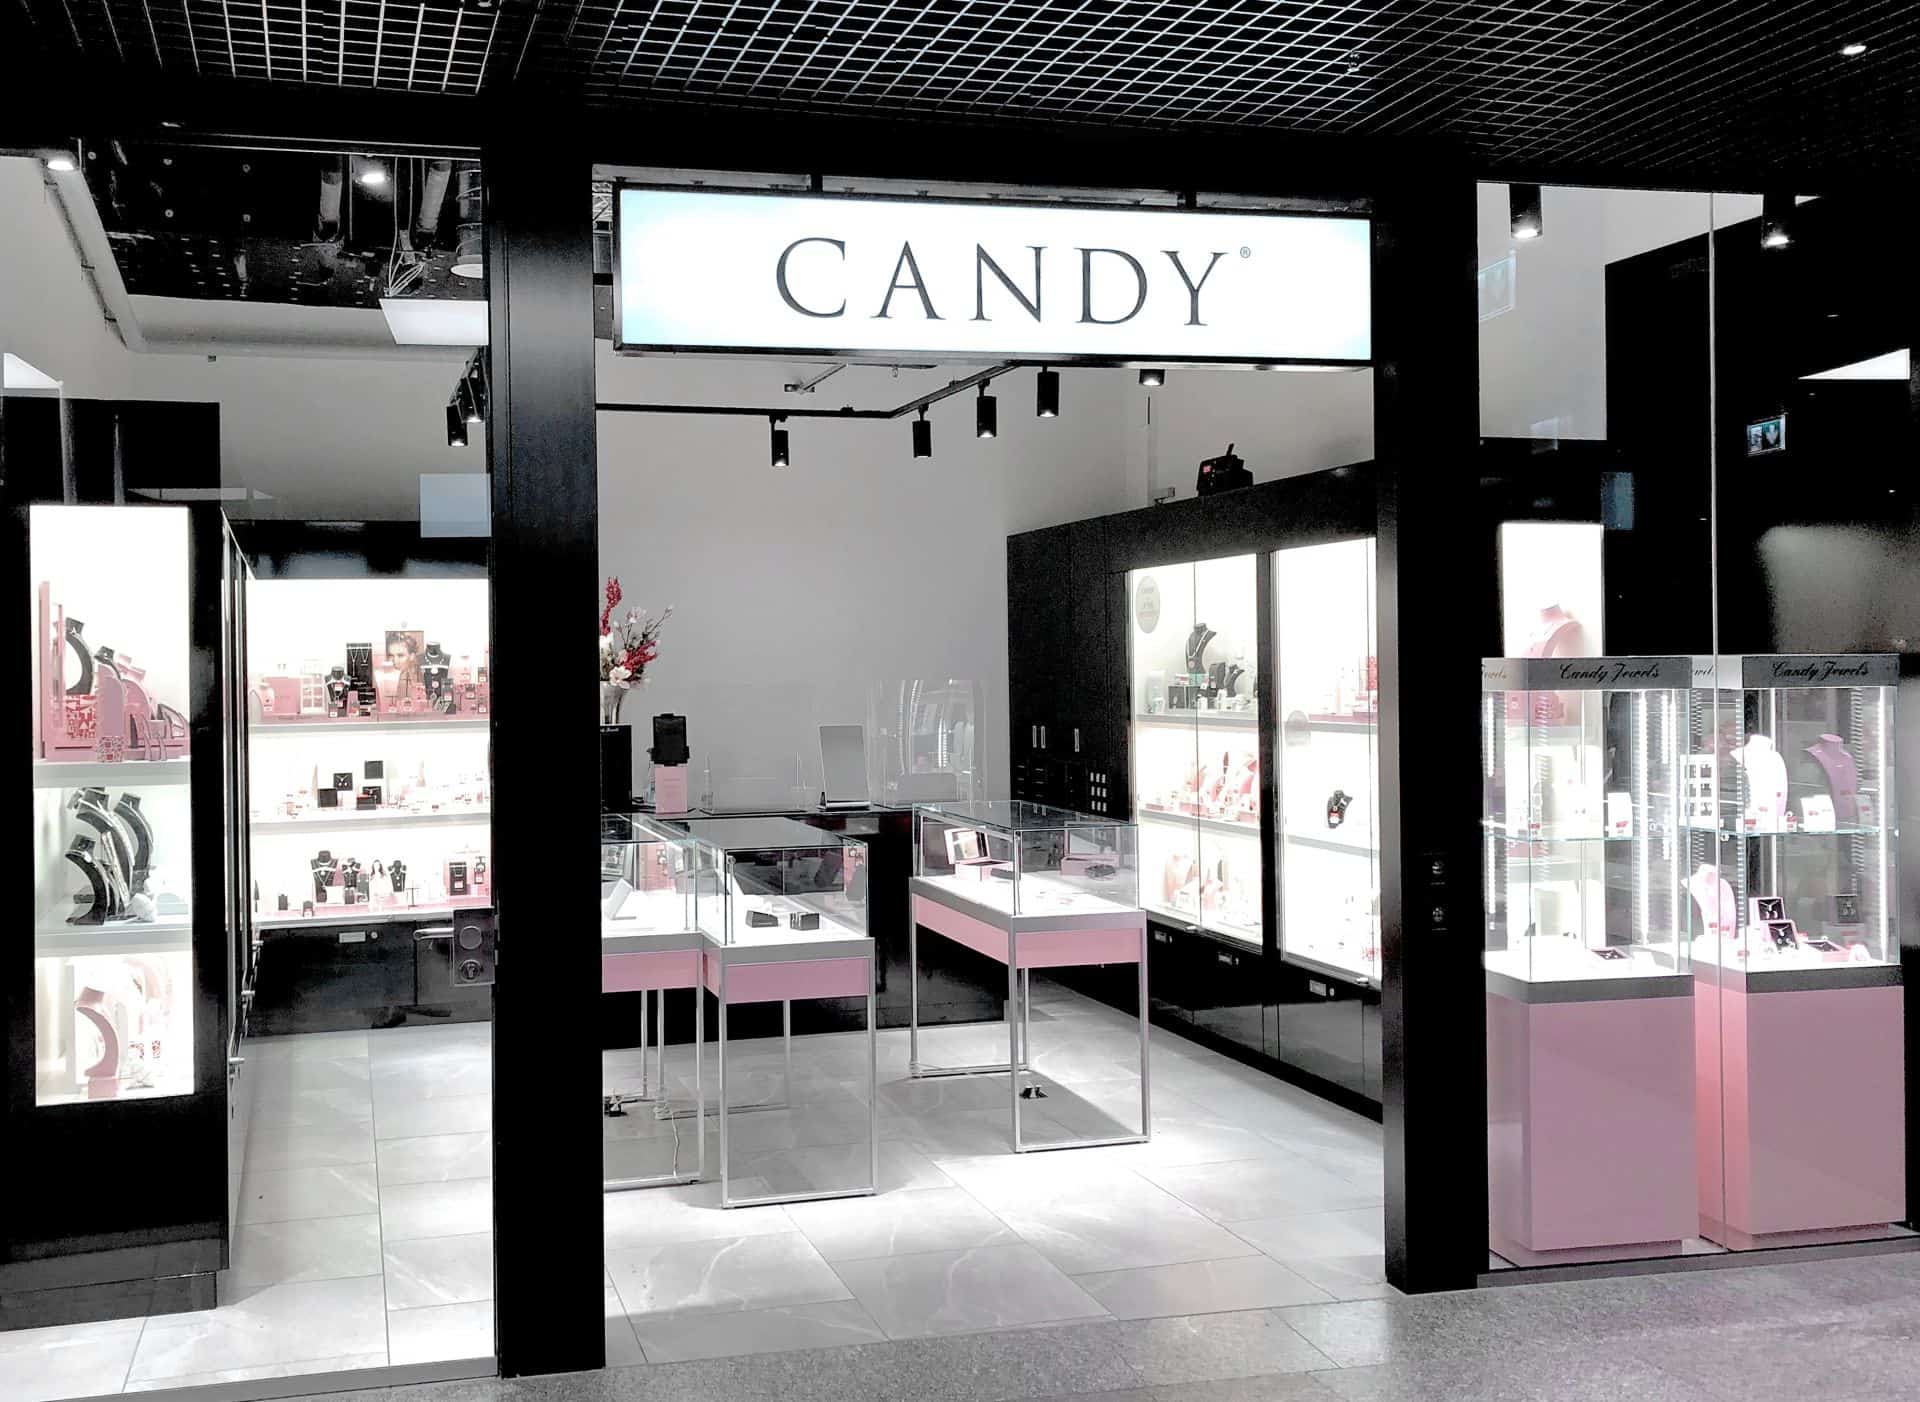 CANDY Schmuck im Neumarkt shopping center in zürich